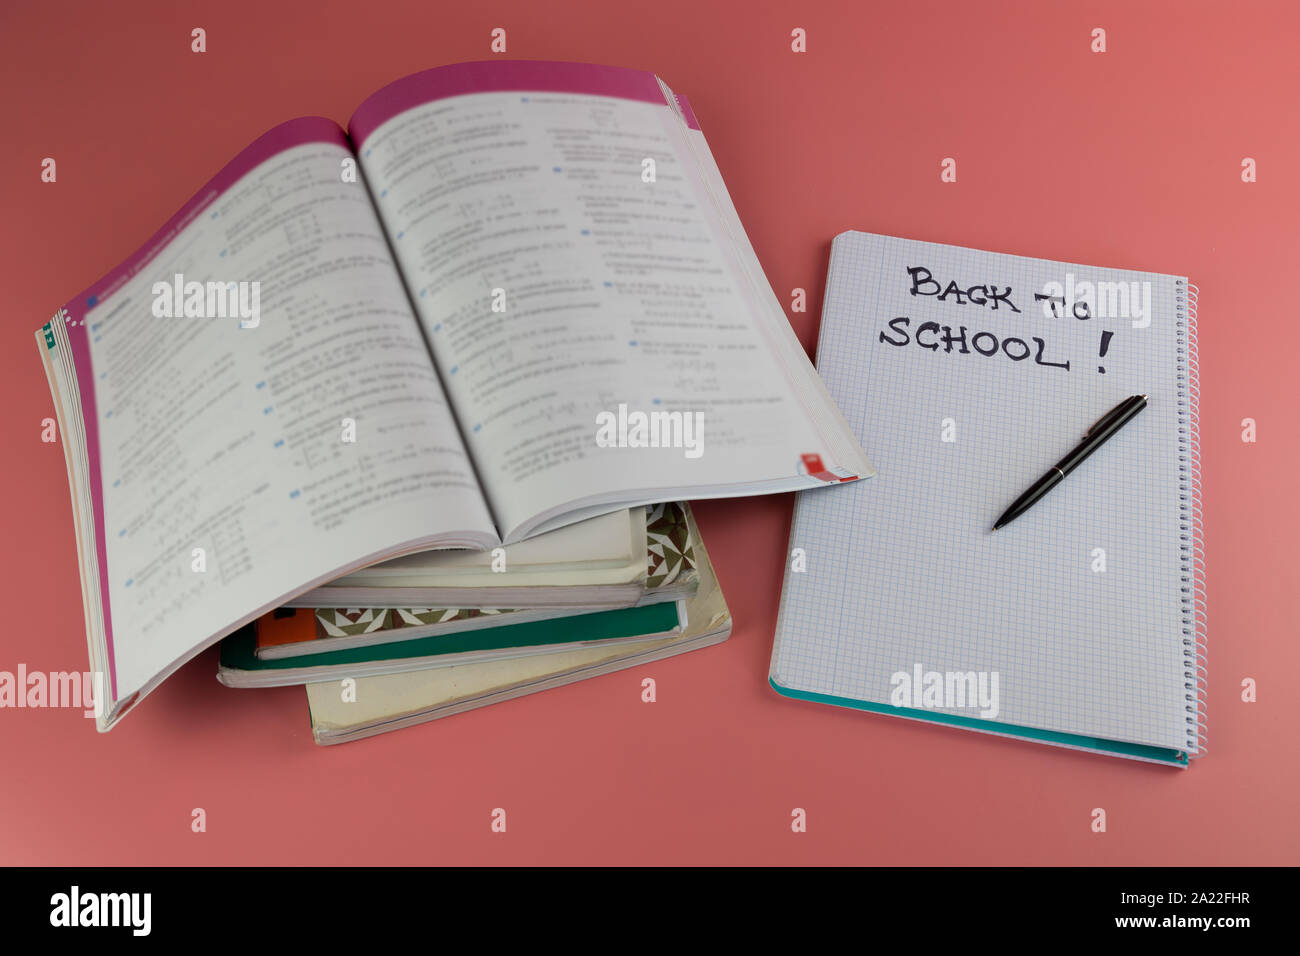 Si torna a scuola concetto, libri e aprire il notebook con le parole si torna a scuola scritto su di esso, su un sfondo rosa Foto Stock